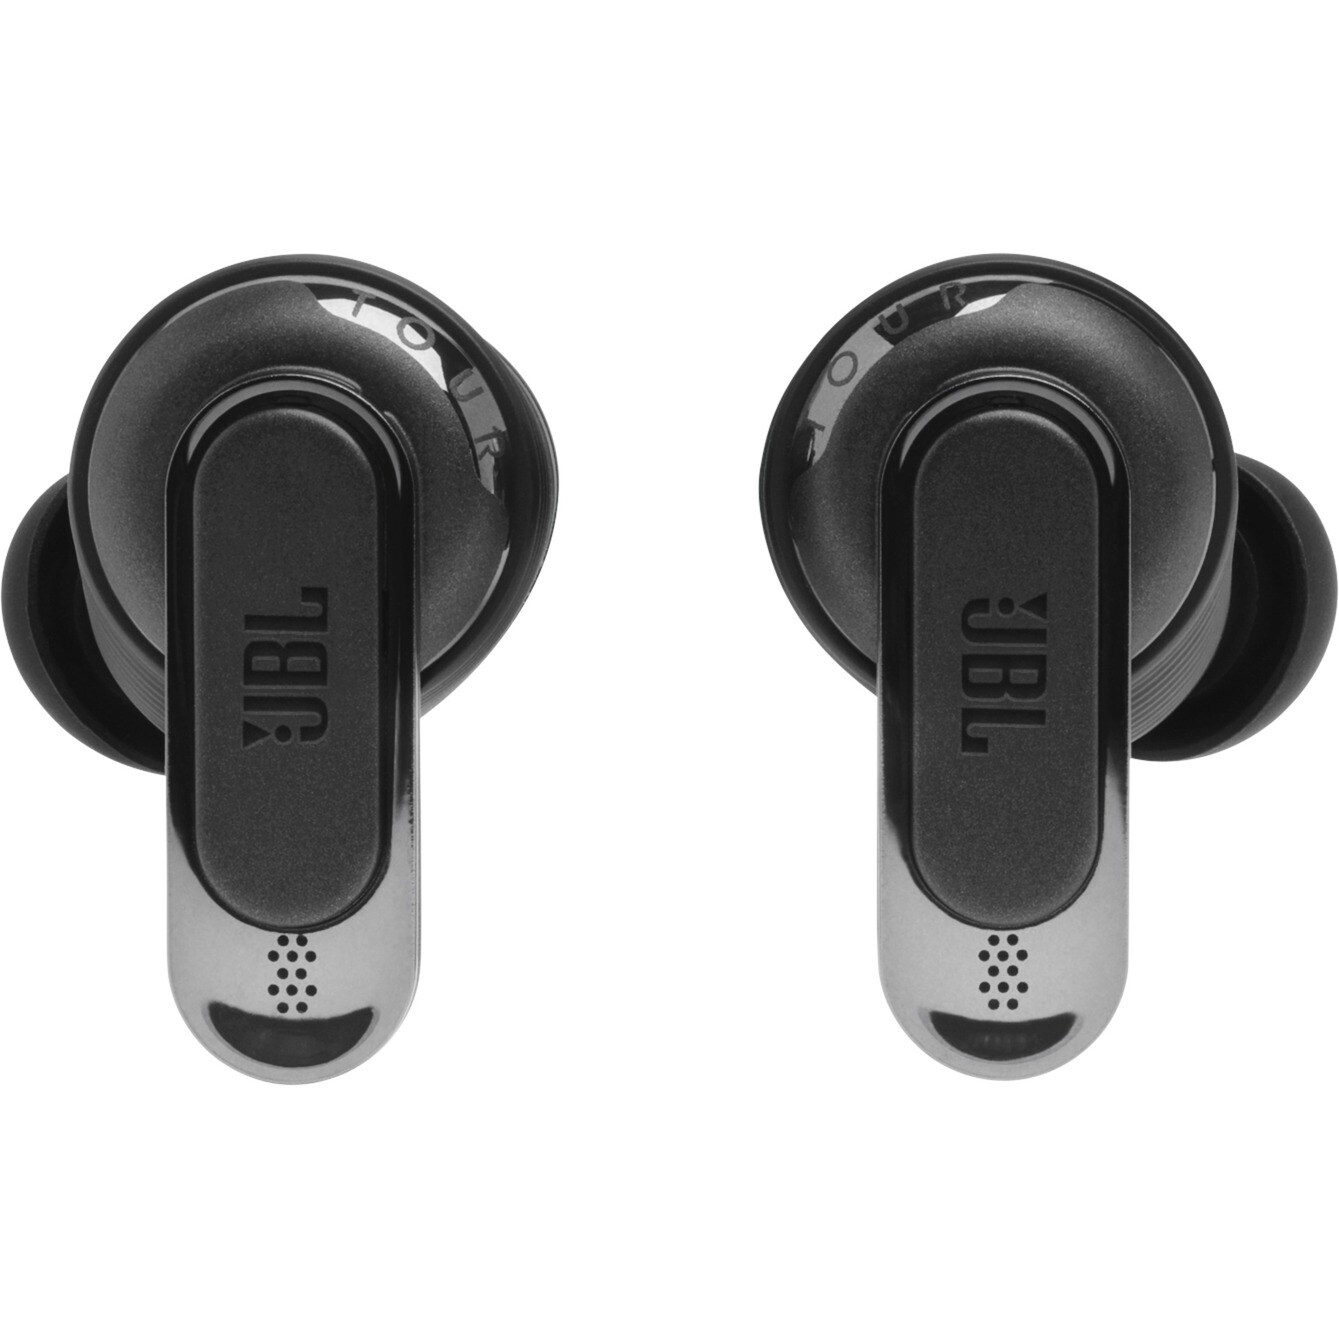 JBL TOUR PRO 2 In-Ear schwarz Cyberport Bluetooth Kopfhörer 